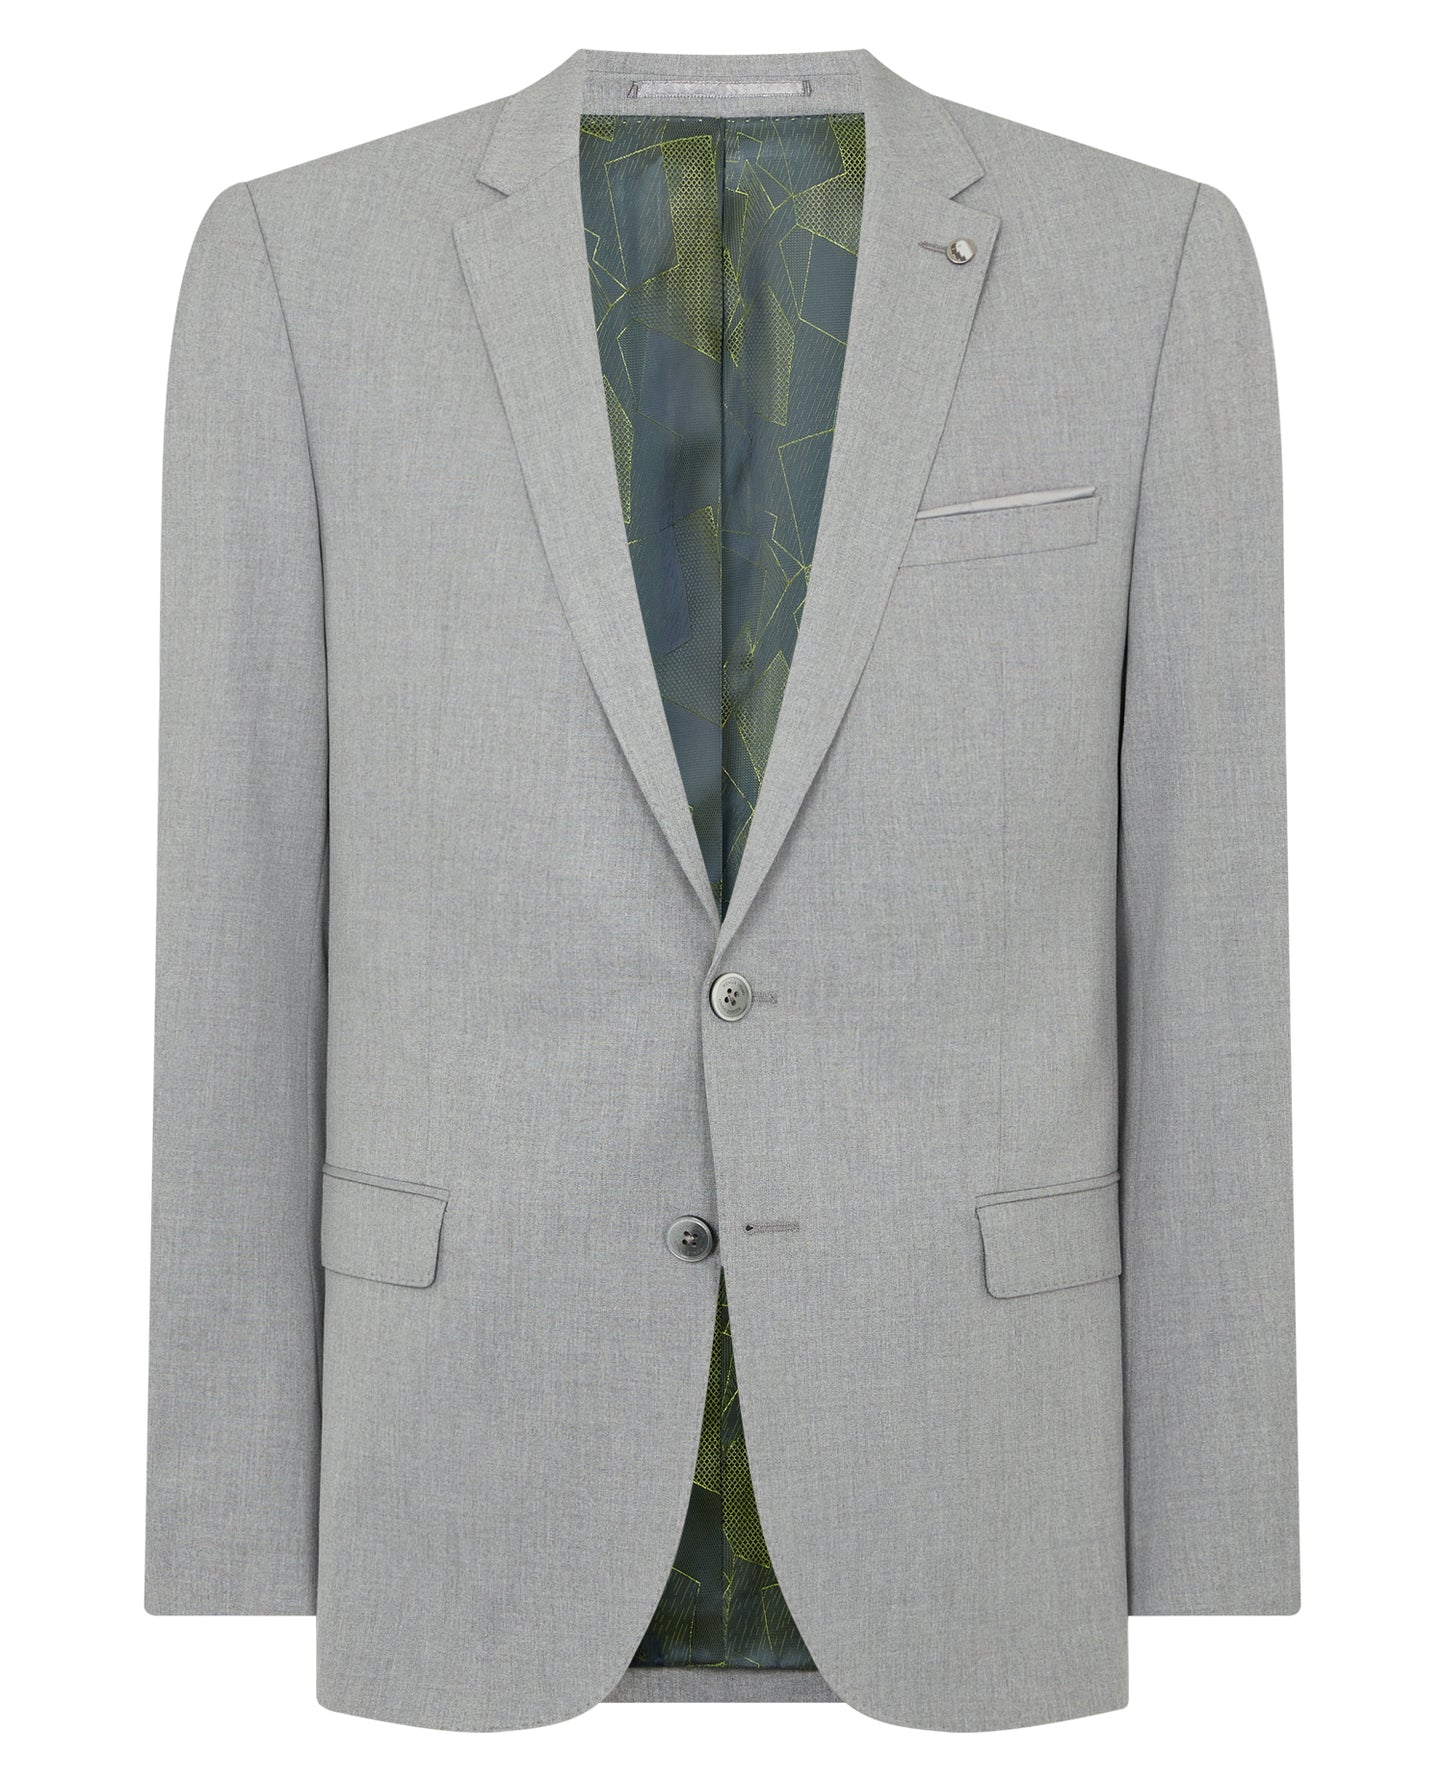 Remus Uomo 11880 05 Light Grey Slim Suit Jacket